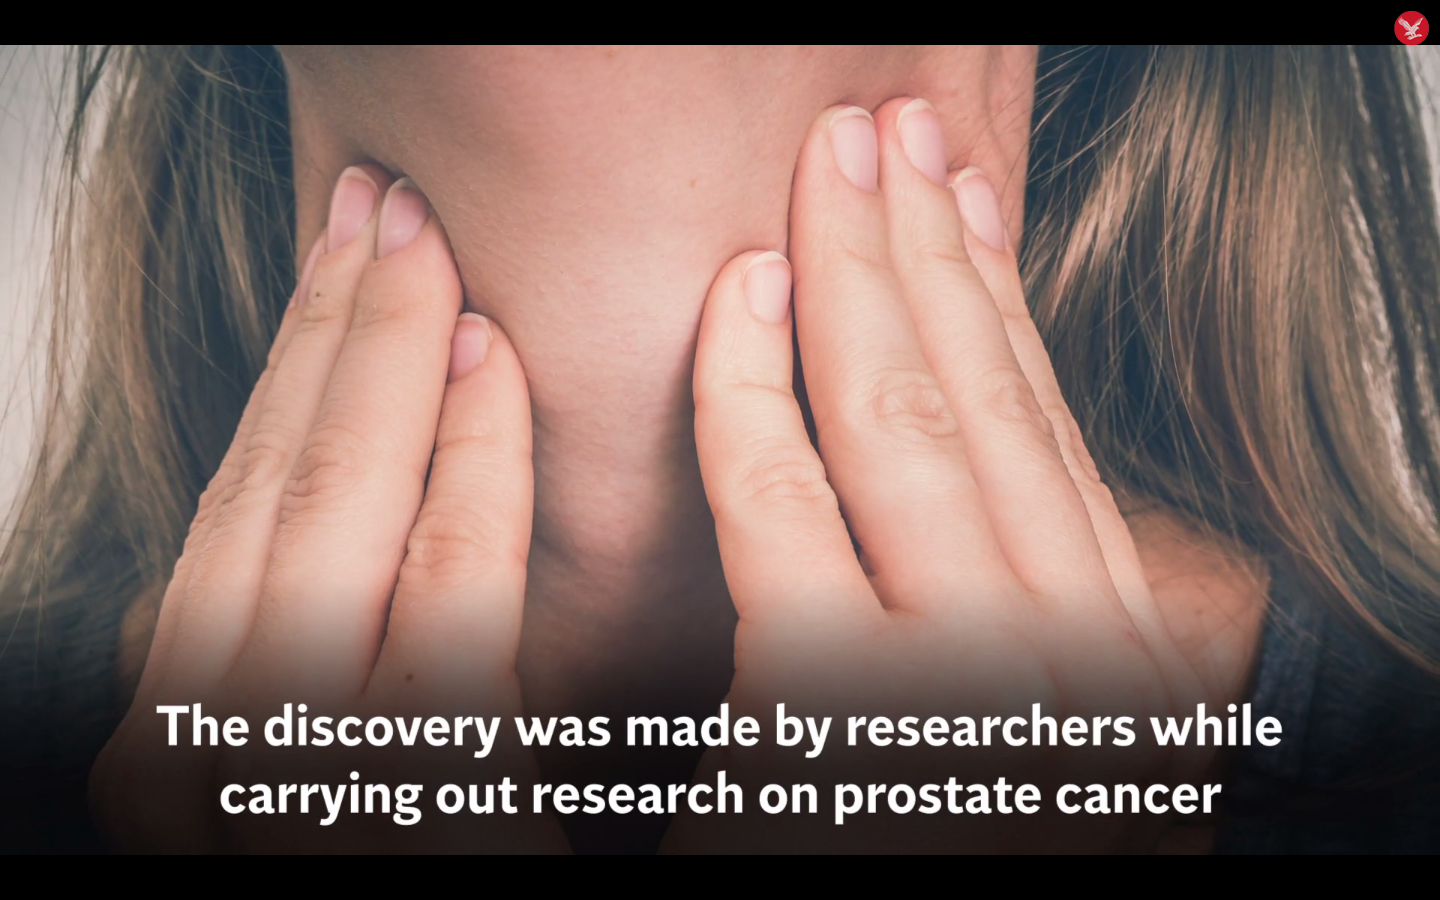 Βρέθηκε επιπλέον όργανο στο ανθρώπινο σώμα – Πώς θα επηρεάσει τη θεραπεία για τον καρκίνο